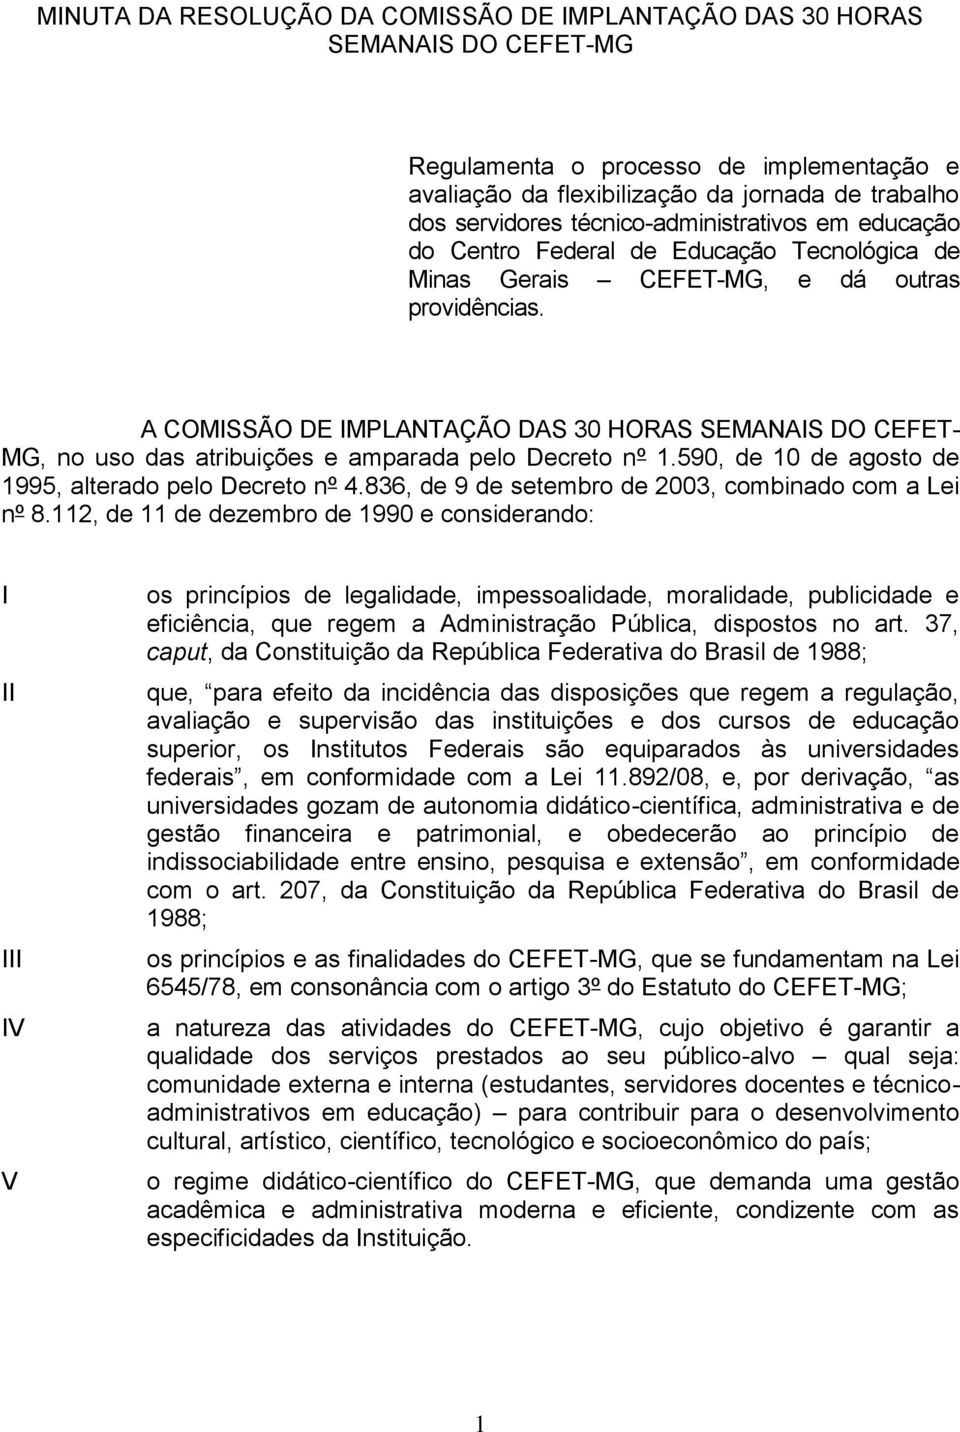 A COMISSÃO DE IMPLANTAÇÃO DAS 30 HORAS SEMANAIS DO CEFET- MG, no uso das atribuições e amparada pelo Decreto nº 1.590, de 10 de agosto de 1995, alterado pelo Decreto nº 4.